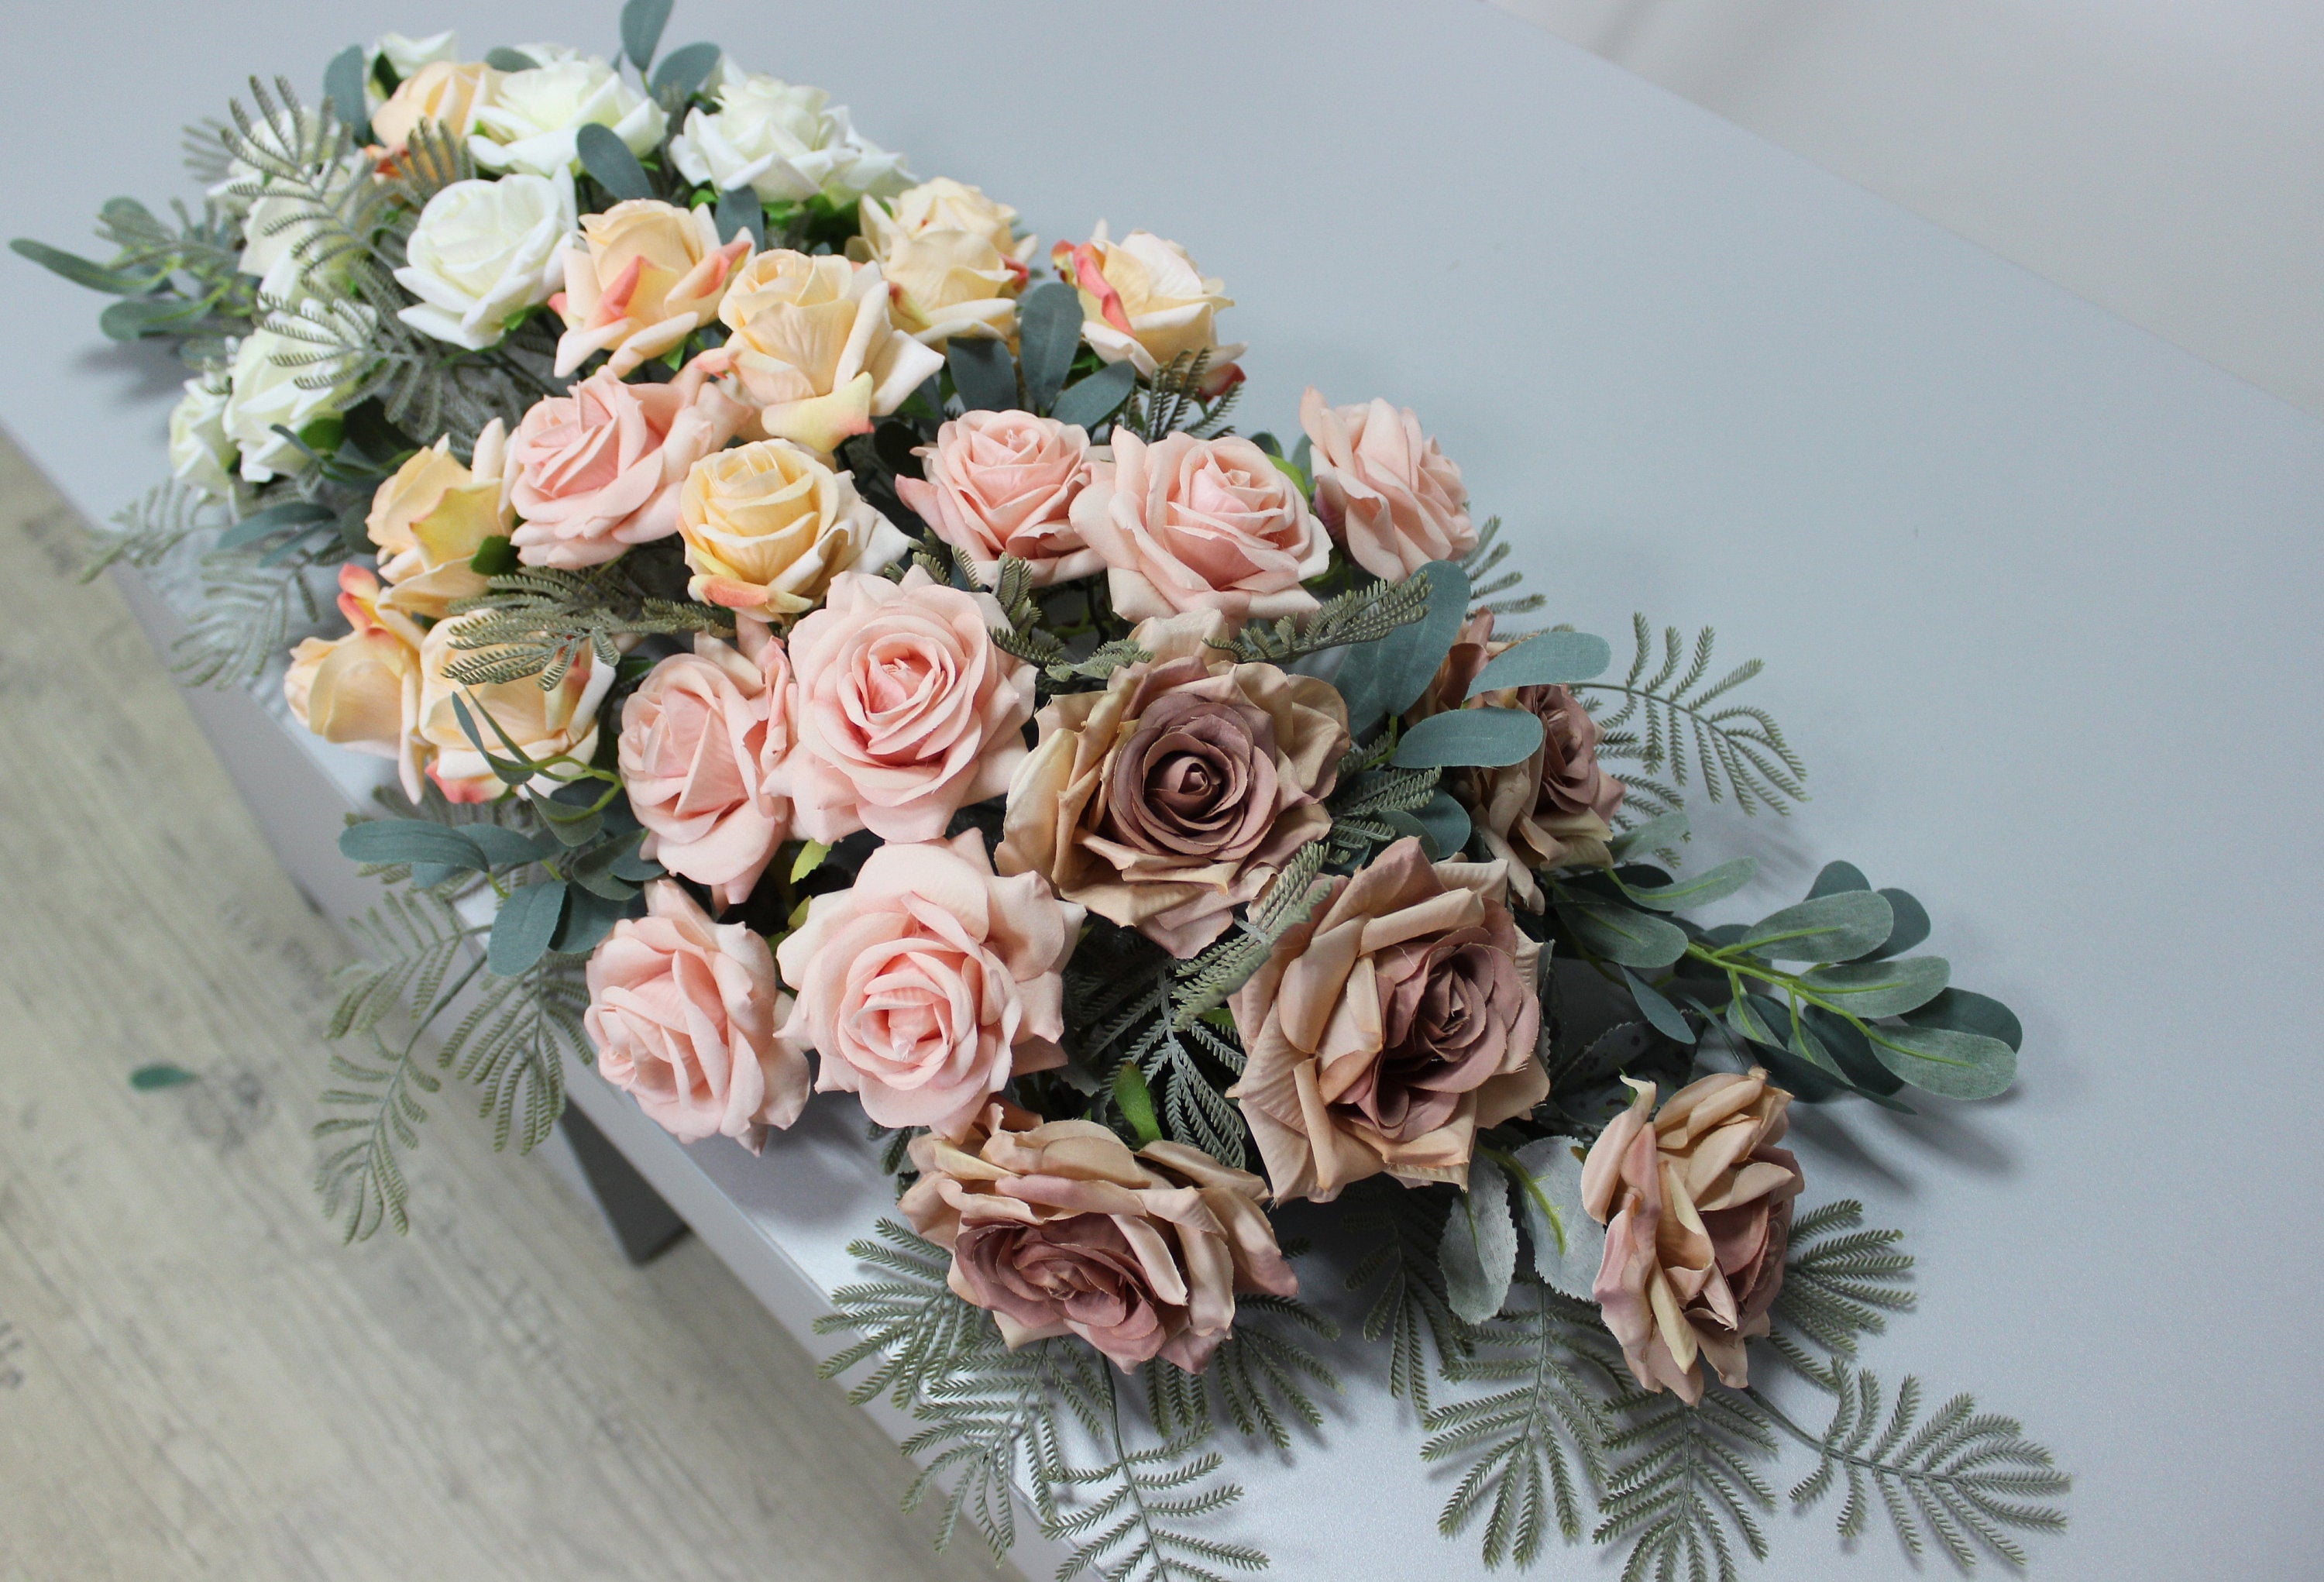 DIMAV Kit n.3 Accessori Tavola Floral addobbi Tema Fiori bellissime Decorazioni Floreali Rose boccioli di Rosa e Fiori Set Chic Elegante e di Tendenza 